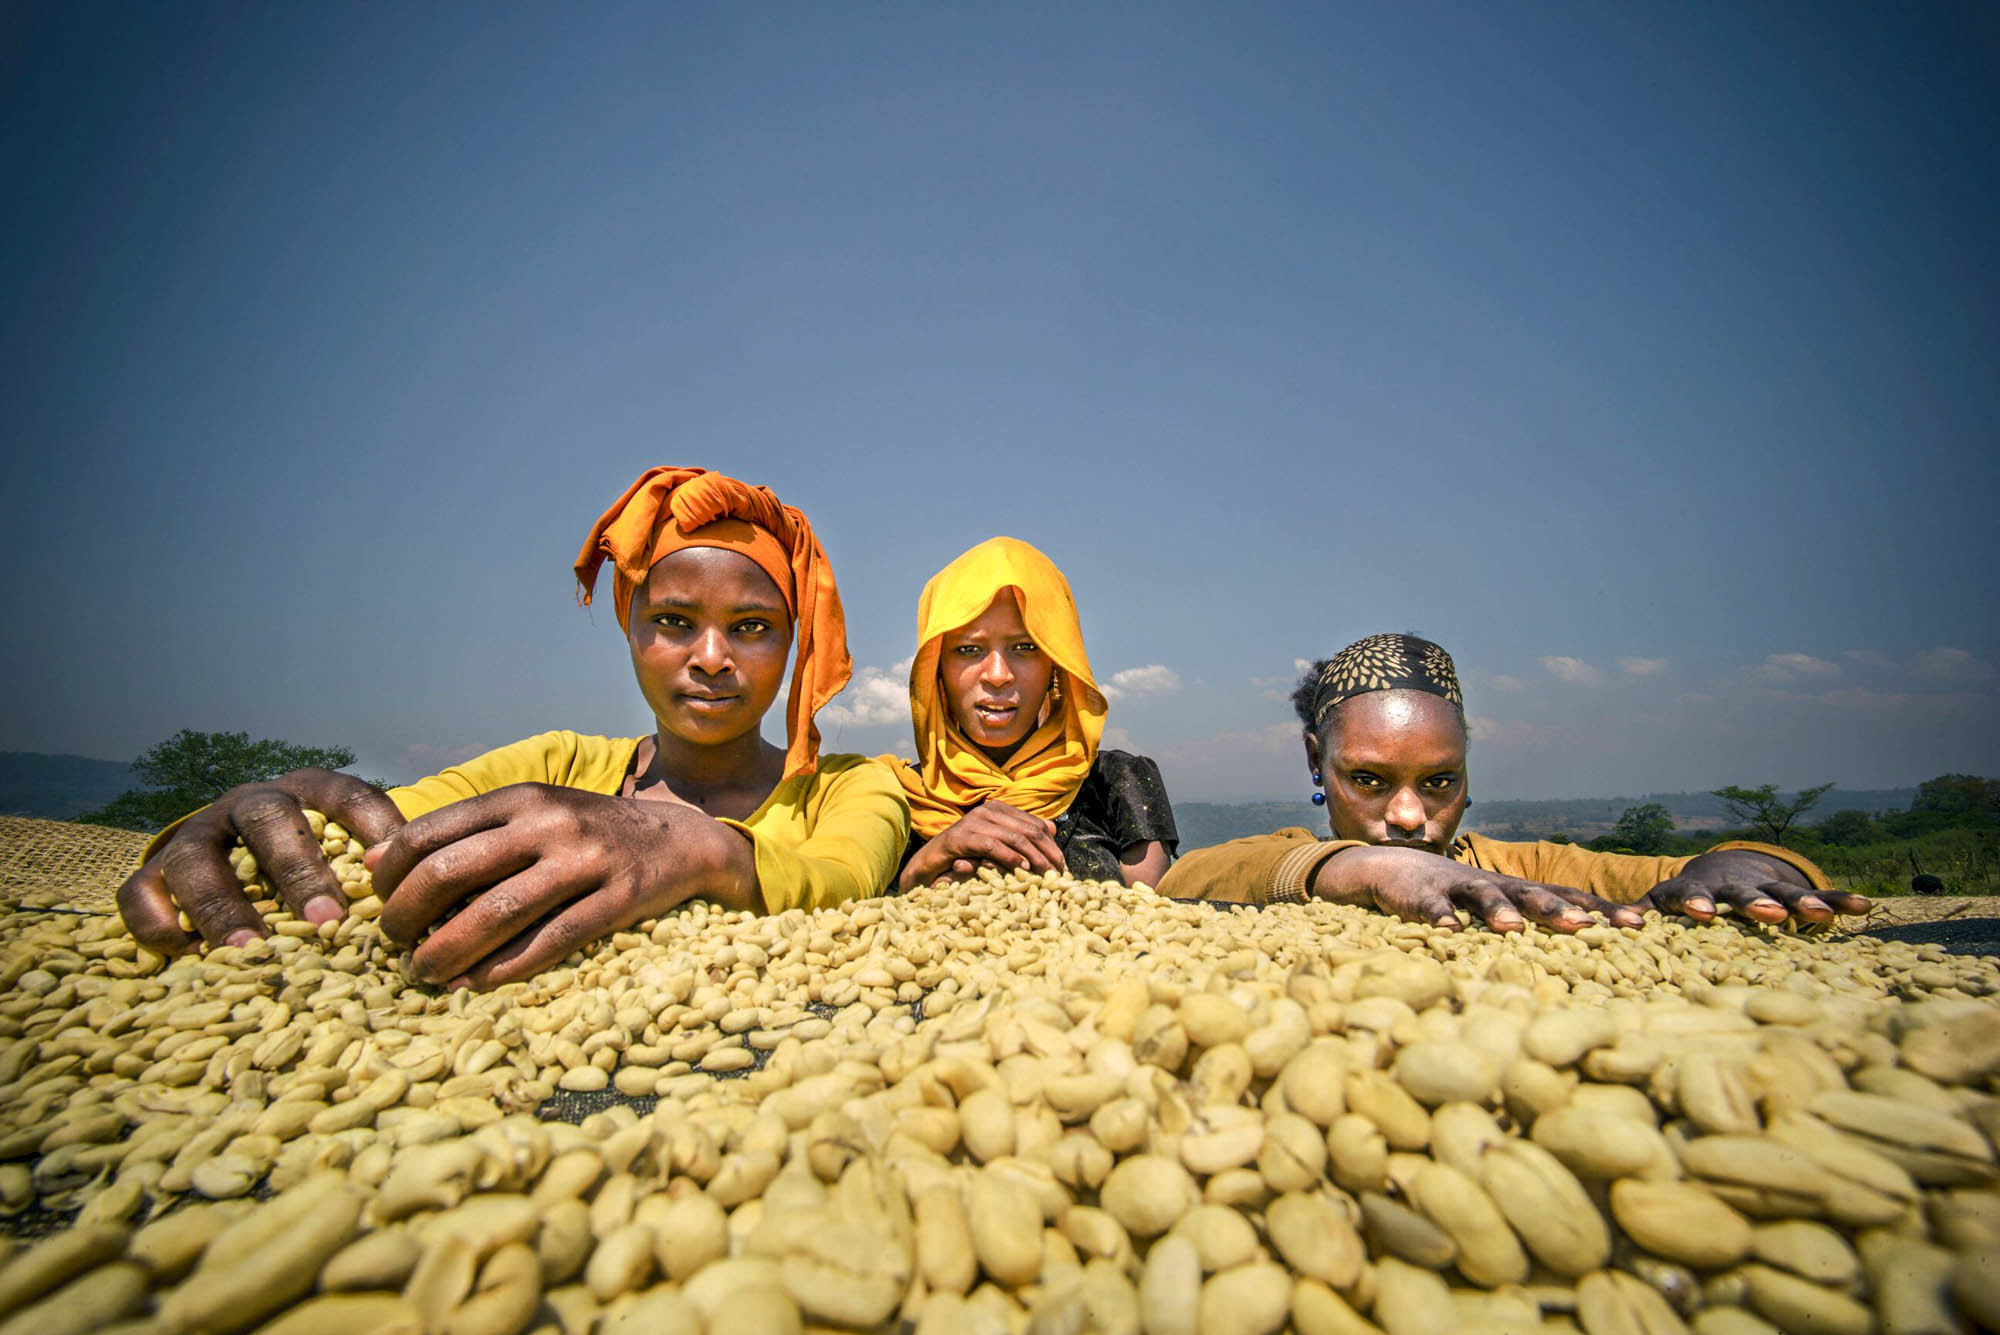 مزرعه قهوه در اتیوپی